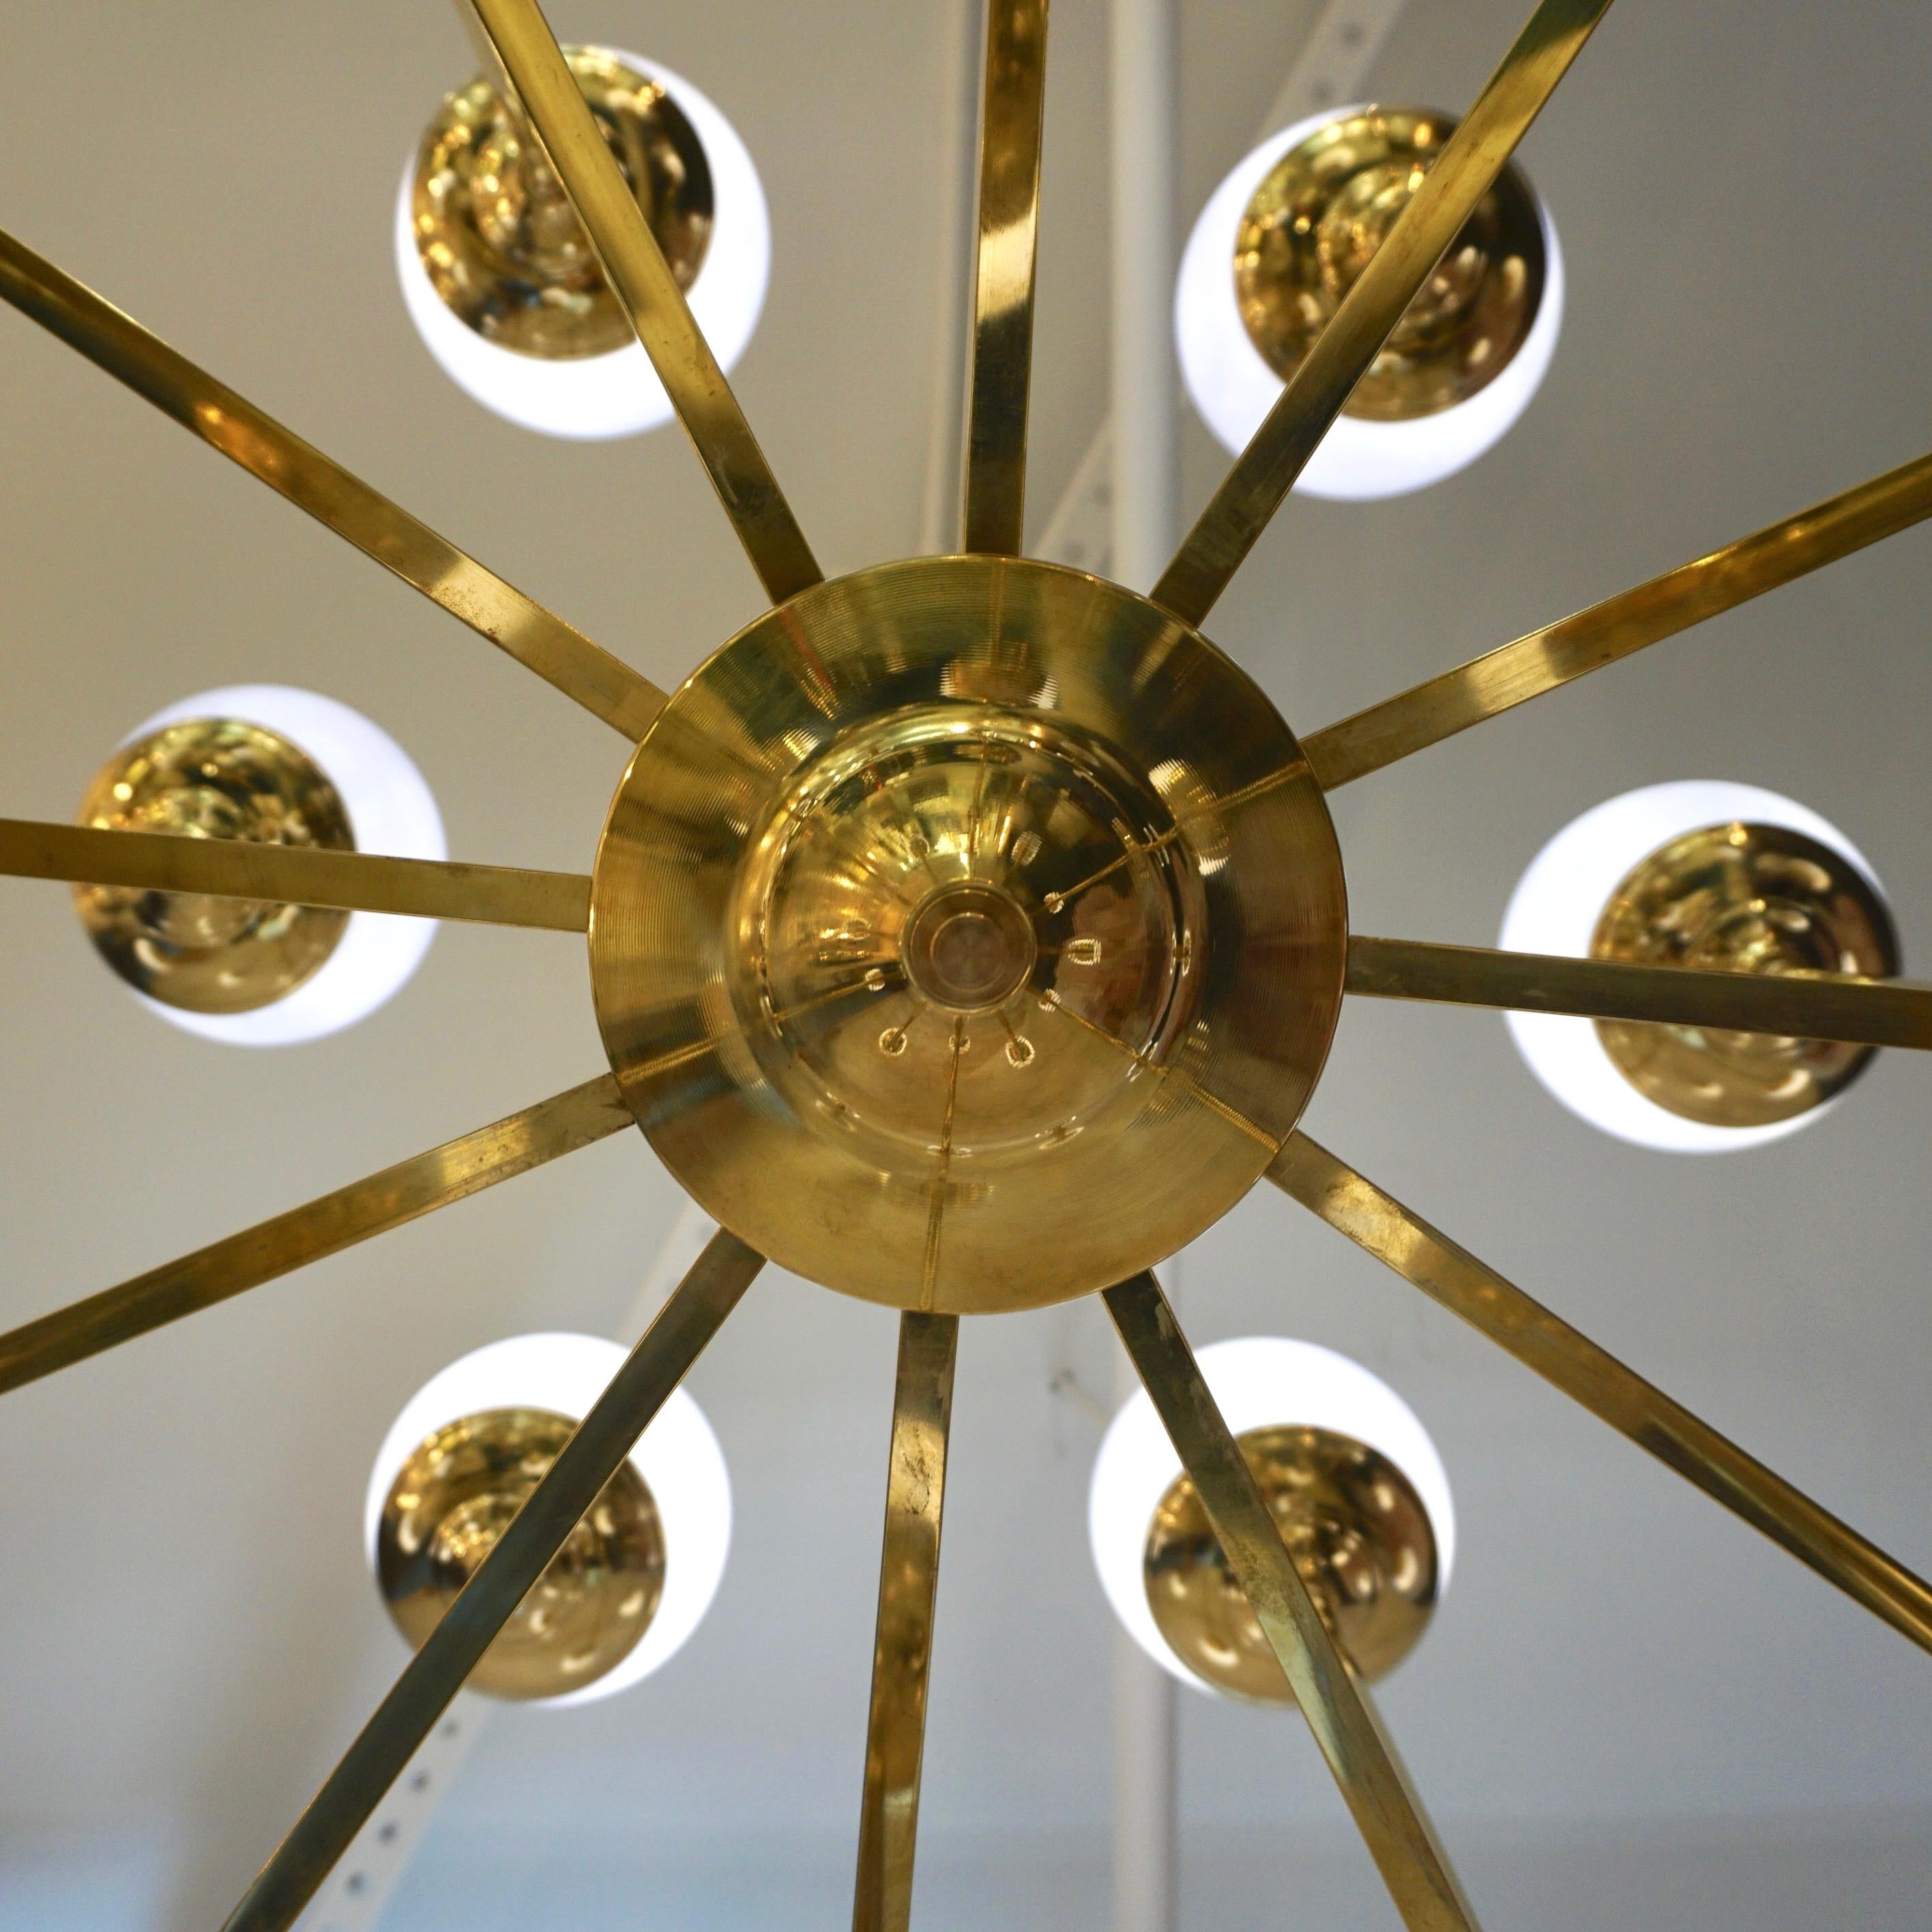 Lustre circulaire contemporain sur mesure au design géométrique minimaliste d'inspiration Sputnik Modern du milieu du siècle dernier, entièrement fabriqué à la main en Italie. La structure en laiton est décorée de 24 globes en verre soufflé de